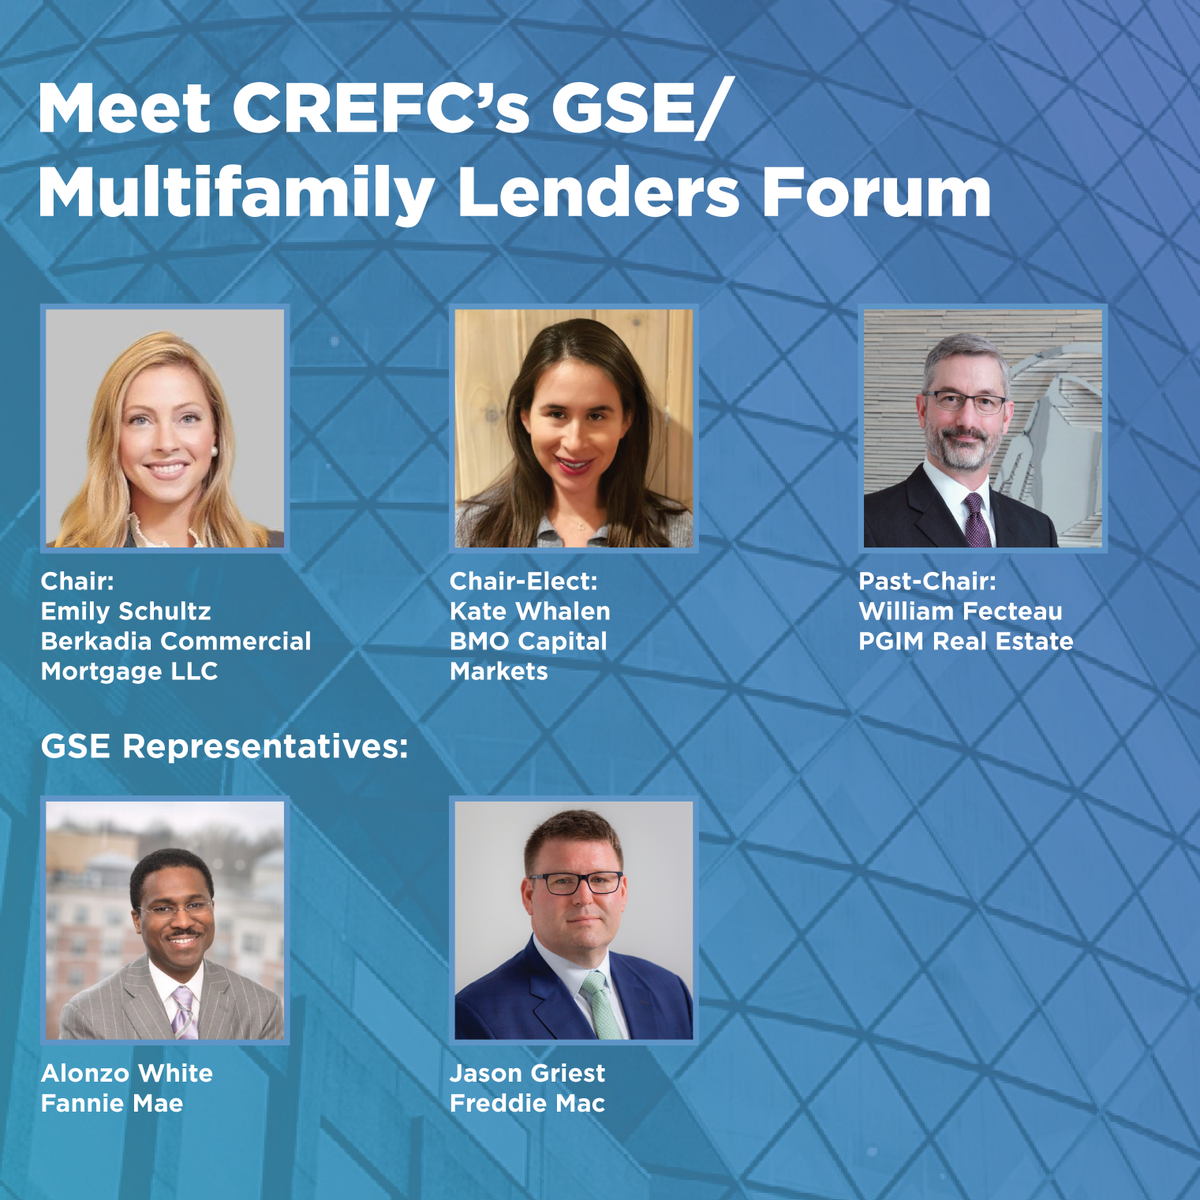 CREFC GSE/Multifamily Lenders